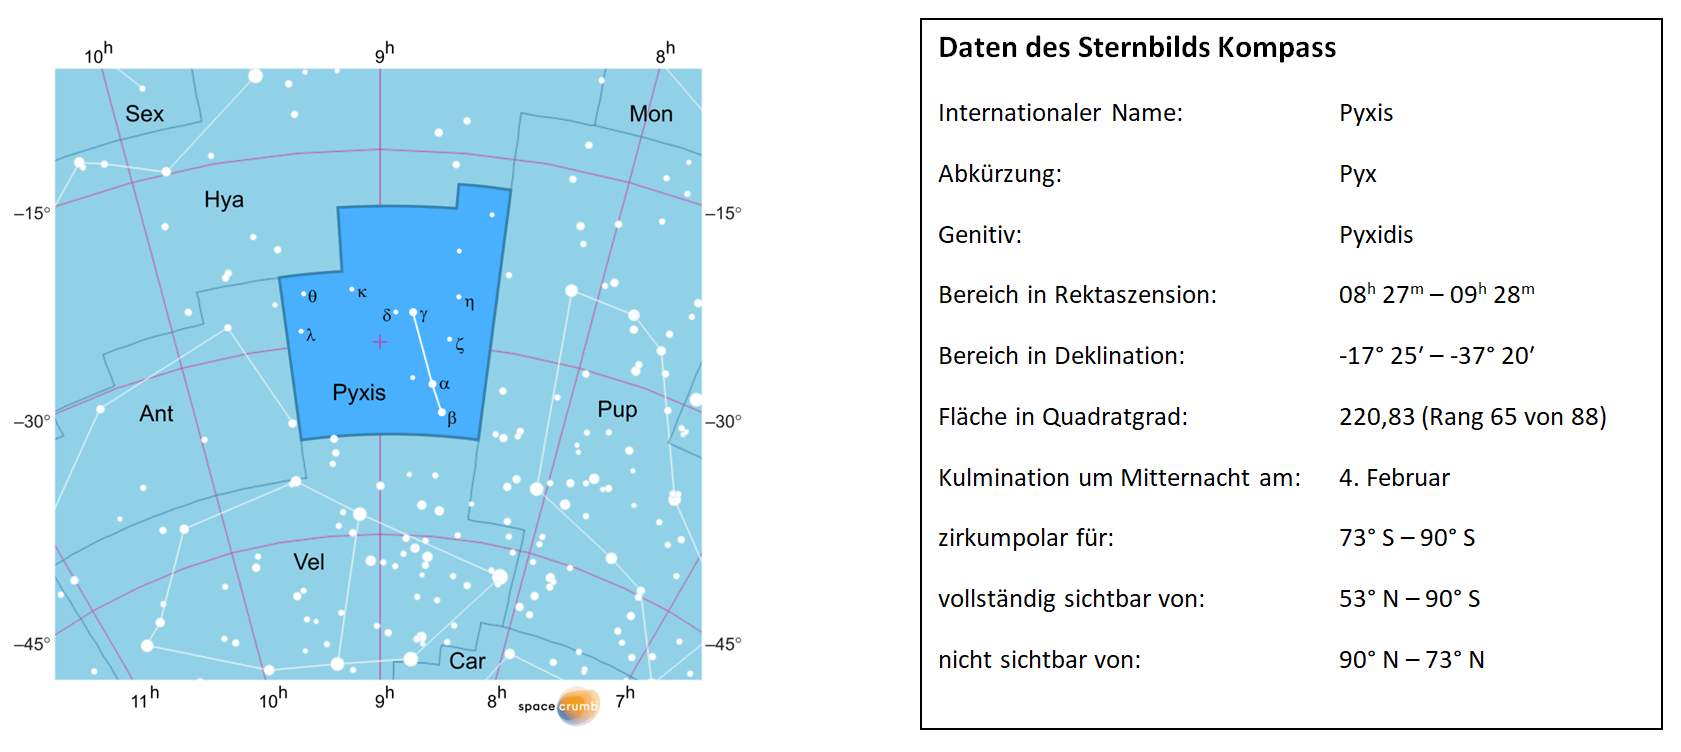 Links zeigt eine mit Koordinaten versehene Karte eines Himmelsausschnitts weiße Sterne auf hellblauem Hintergrund. Die Fläche, die das Sternbild Kompass einnimmt, ist dunkelblau hervorgehoben. Eine Tabelle rechts gibt wichtige Daten des Sternbilds an.